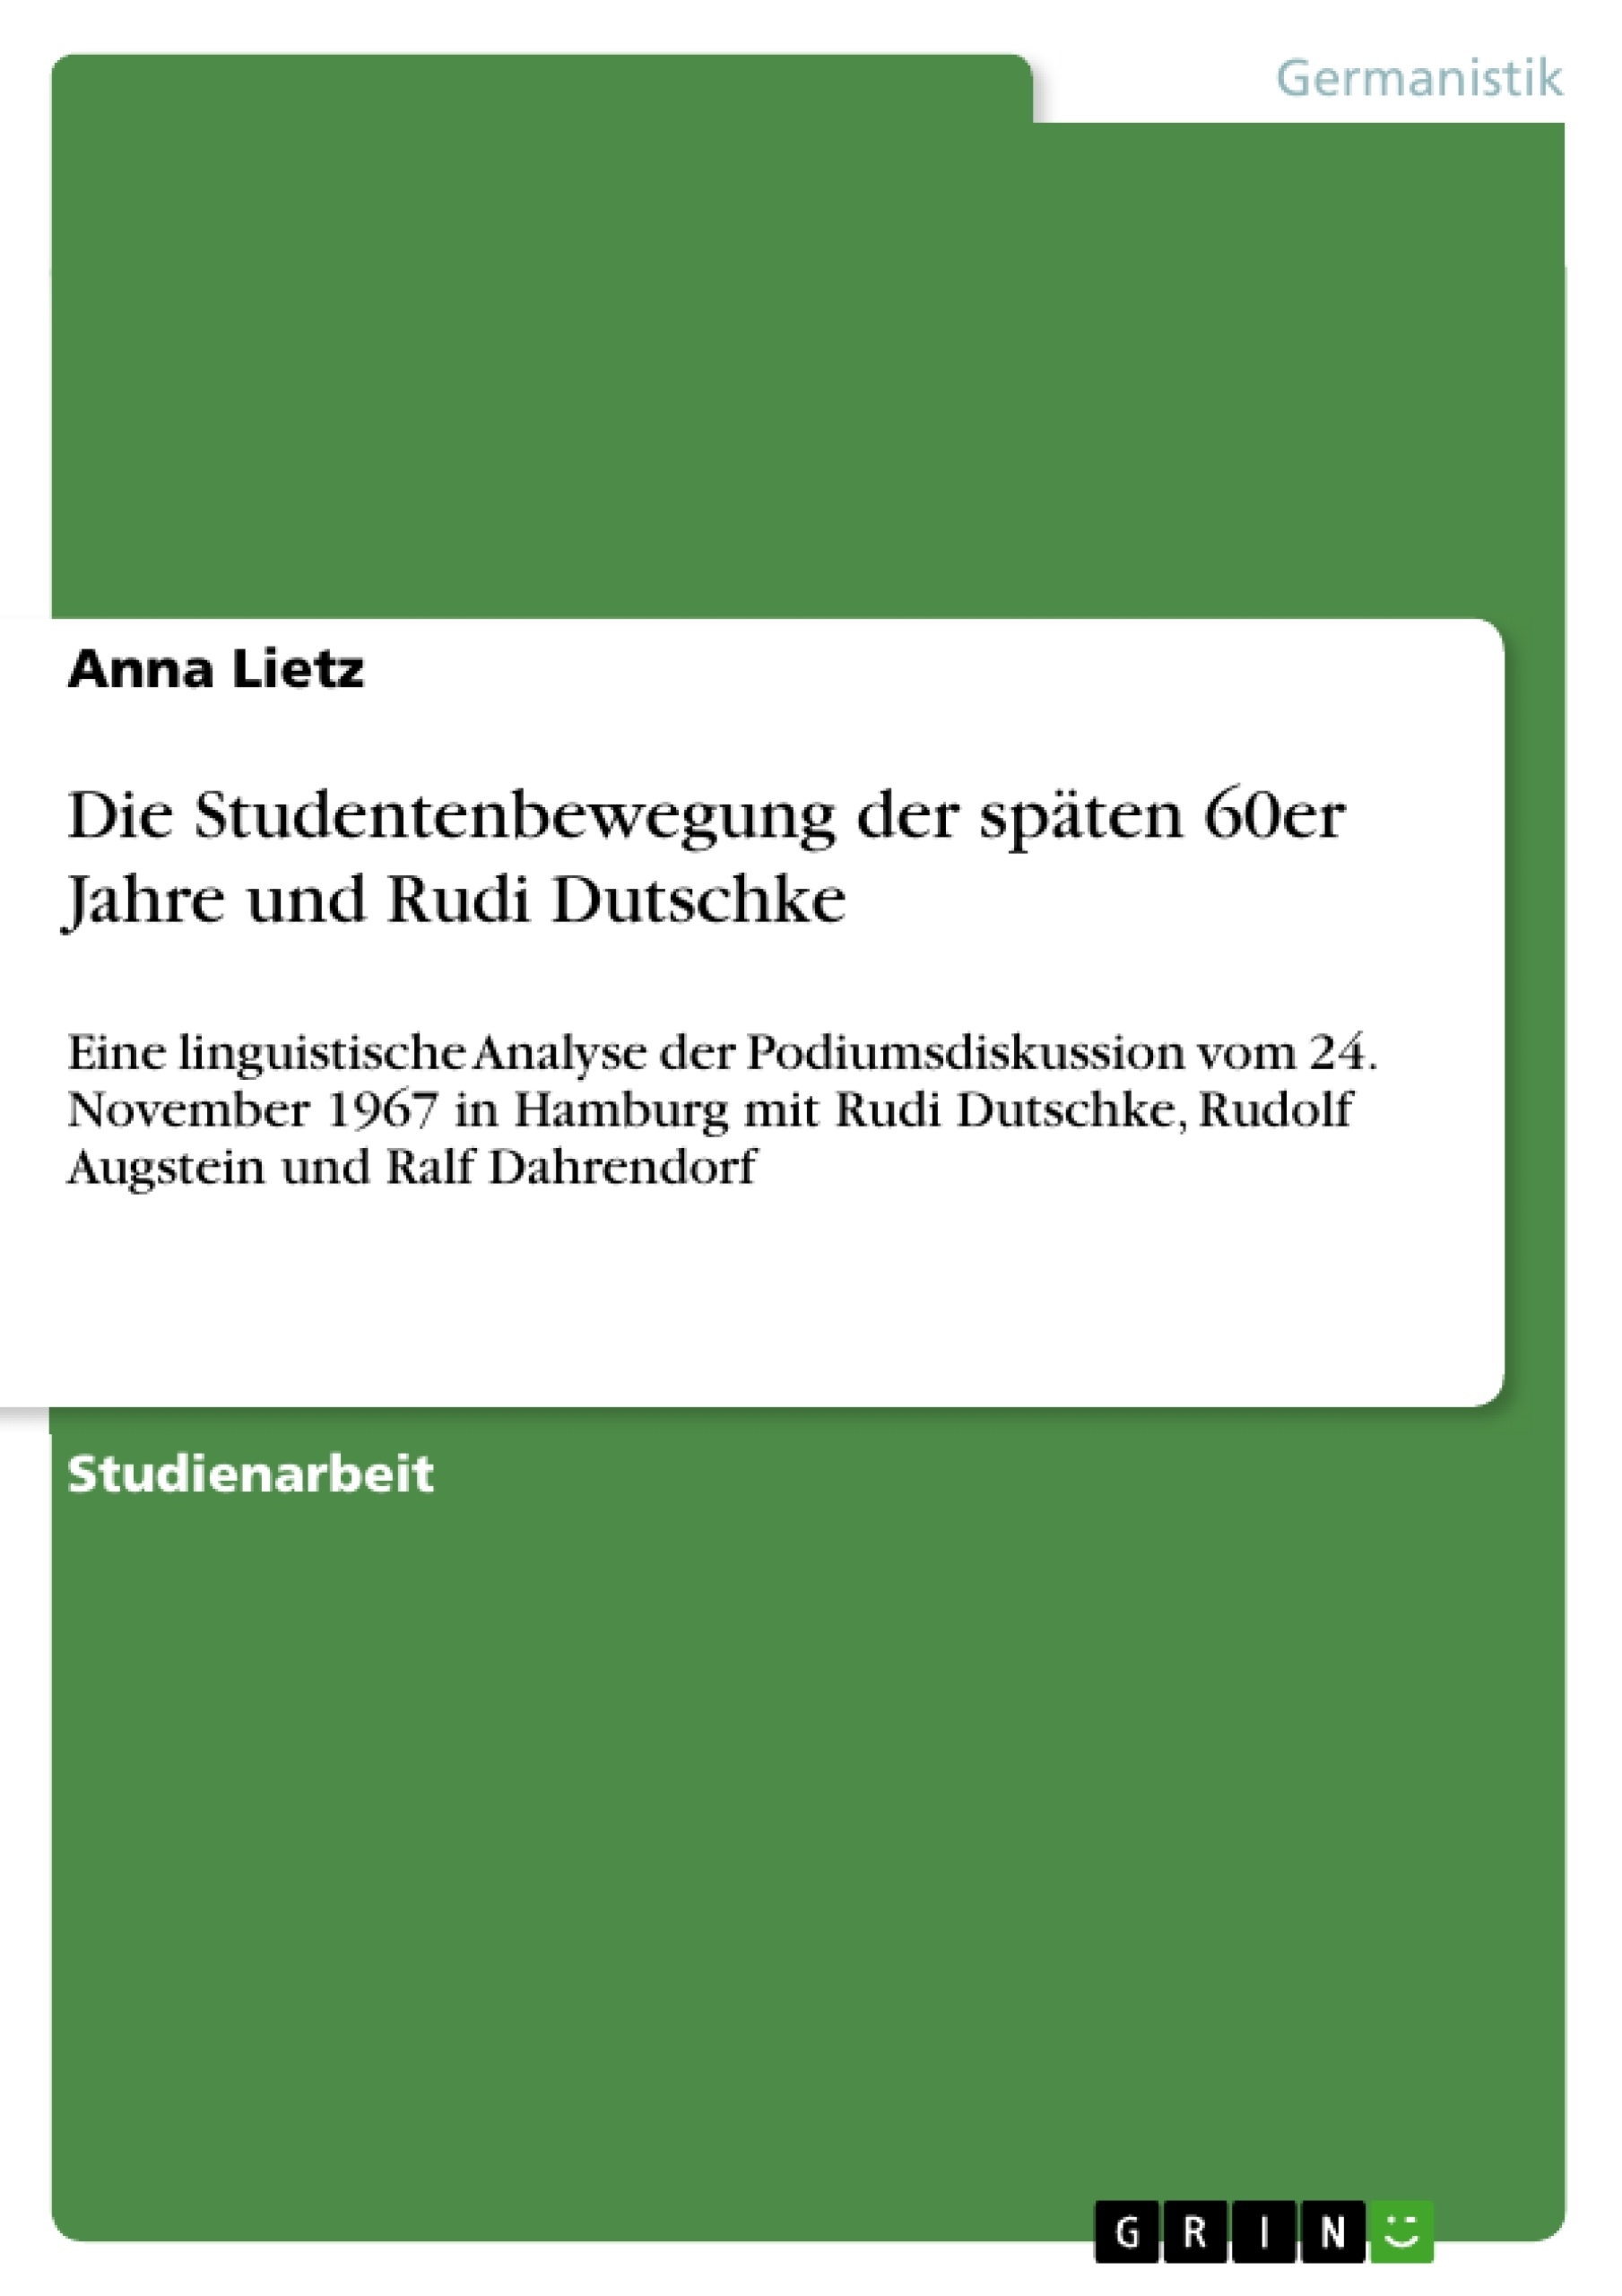 Title: Die Studentenbewegung der späten 60er Jahre und Rudi Dutschke